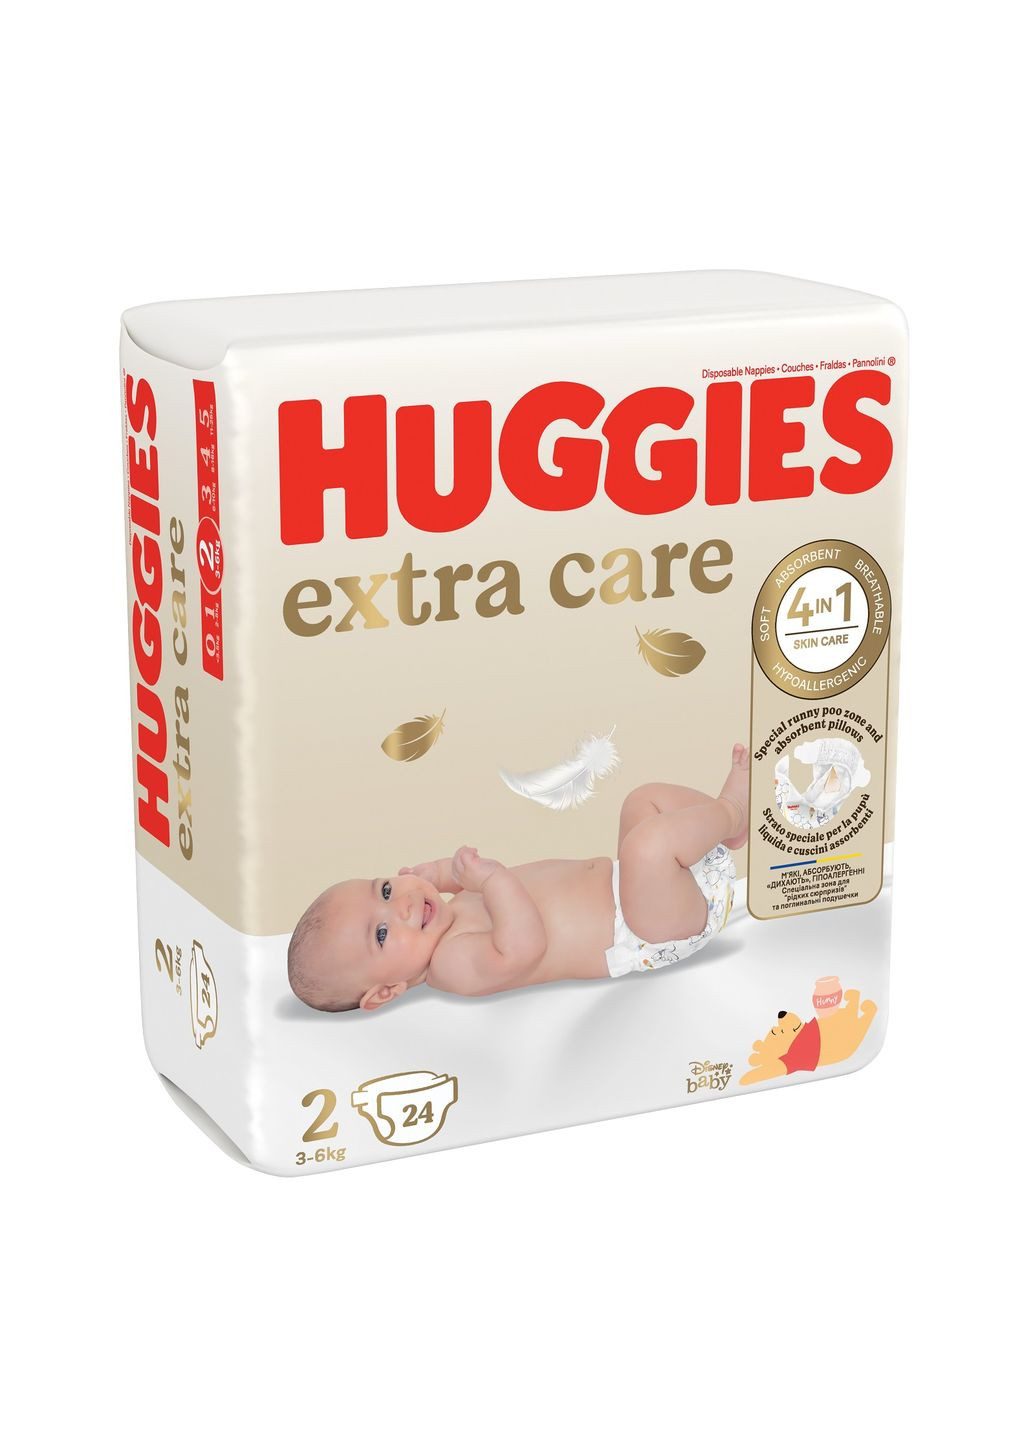 Підгузки Huggies extra care size розмір 2 (3-6 кг) 24 шт (268141156)